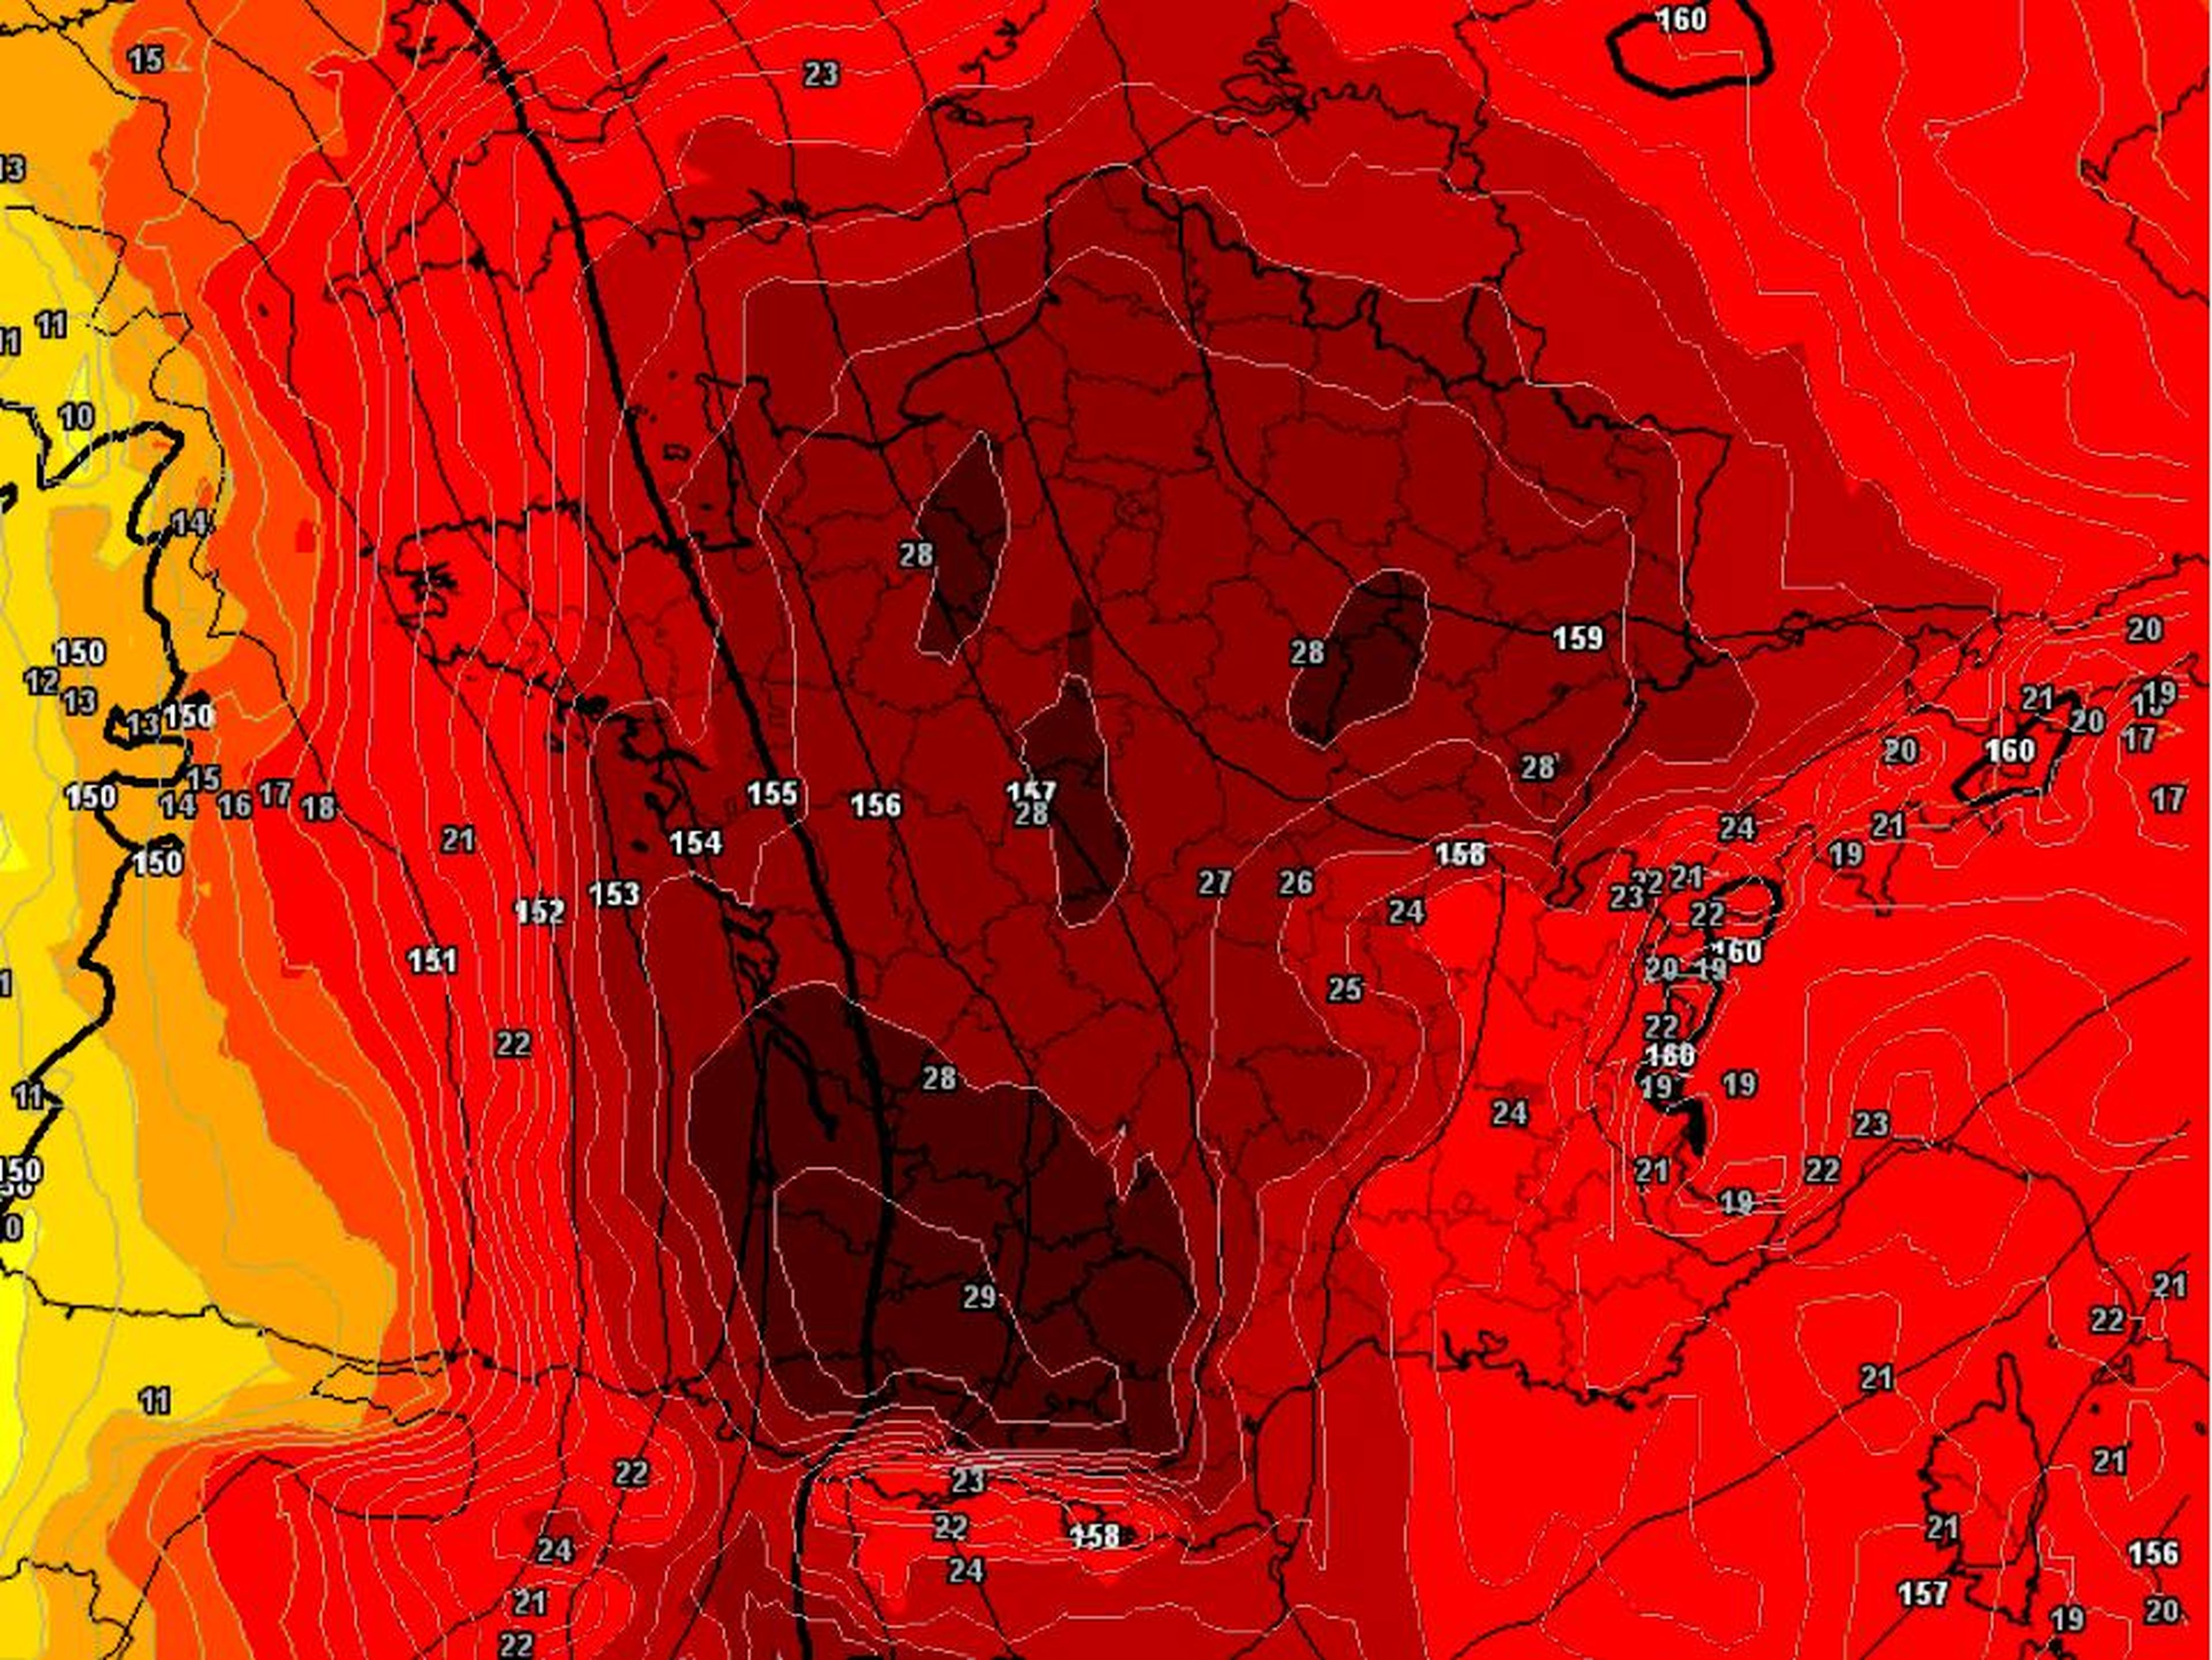 Francia afronta su ola de calor más extrema desde 2003, con esta ardiente calavera acechando en su mapa.